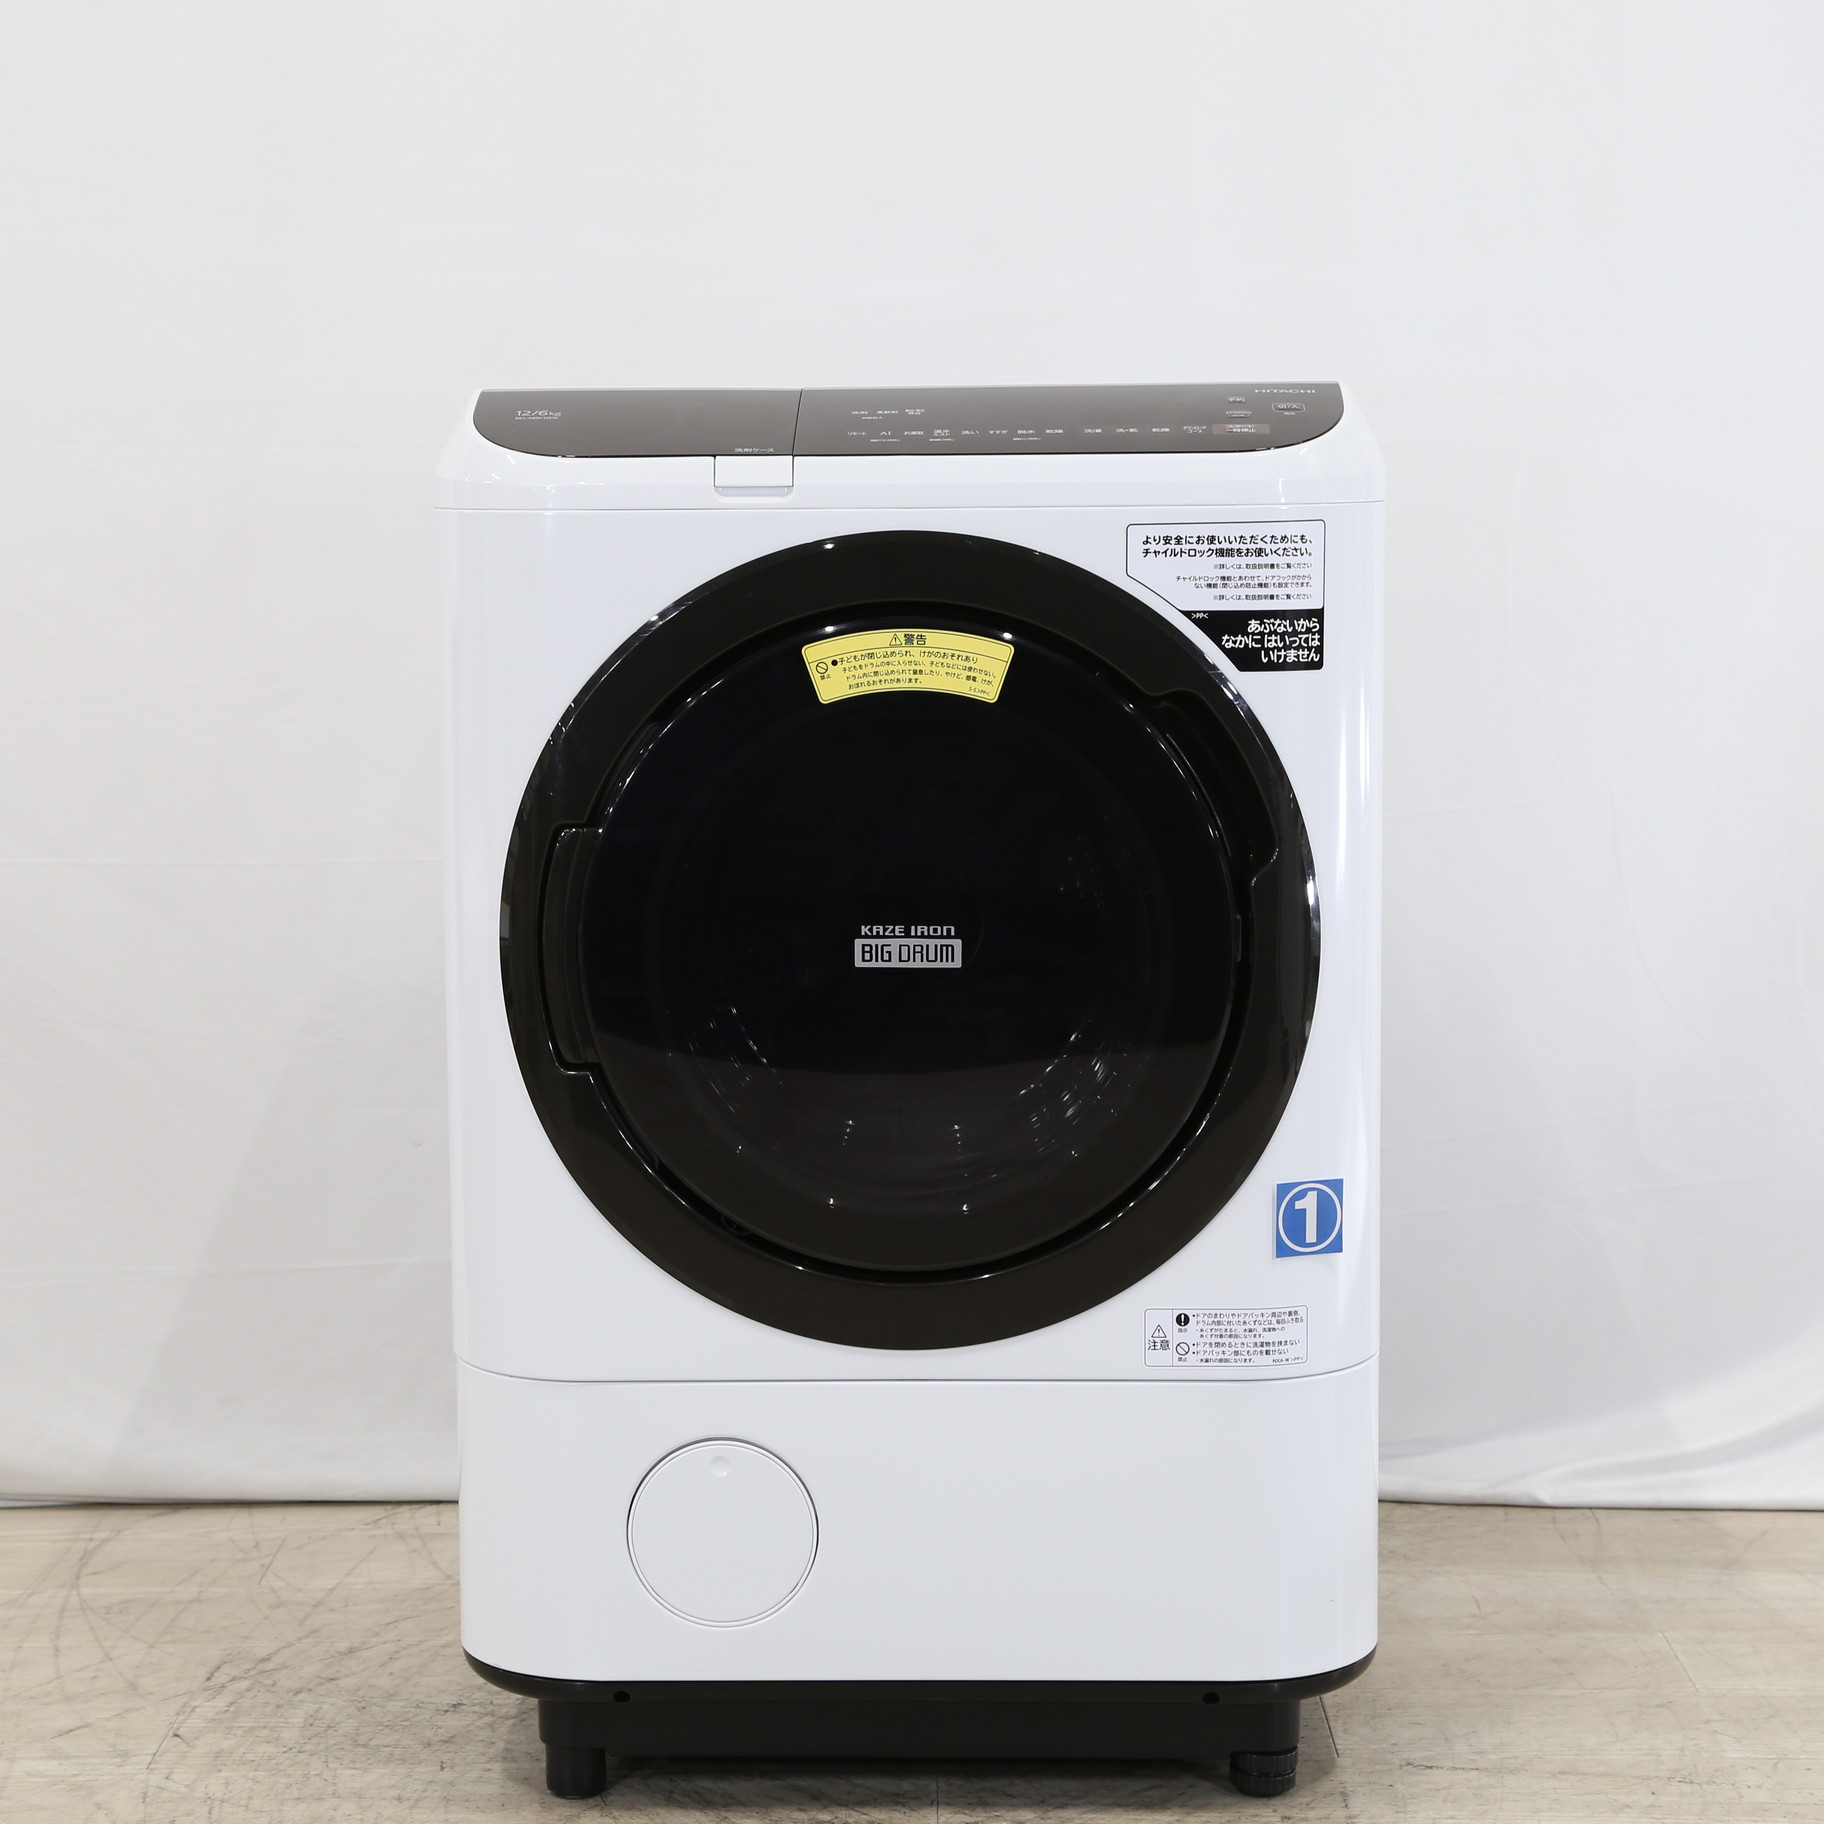 中古 展示品 ドラム式洗濯乾燥機 Nbk1el W ホワイト 洗濯12 0kg 乾燥6 0kg ヒーター乾燥 左開き 11 21 土 値下げ リコレ ソフマップの中古通販サイト